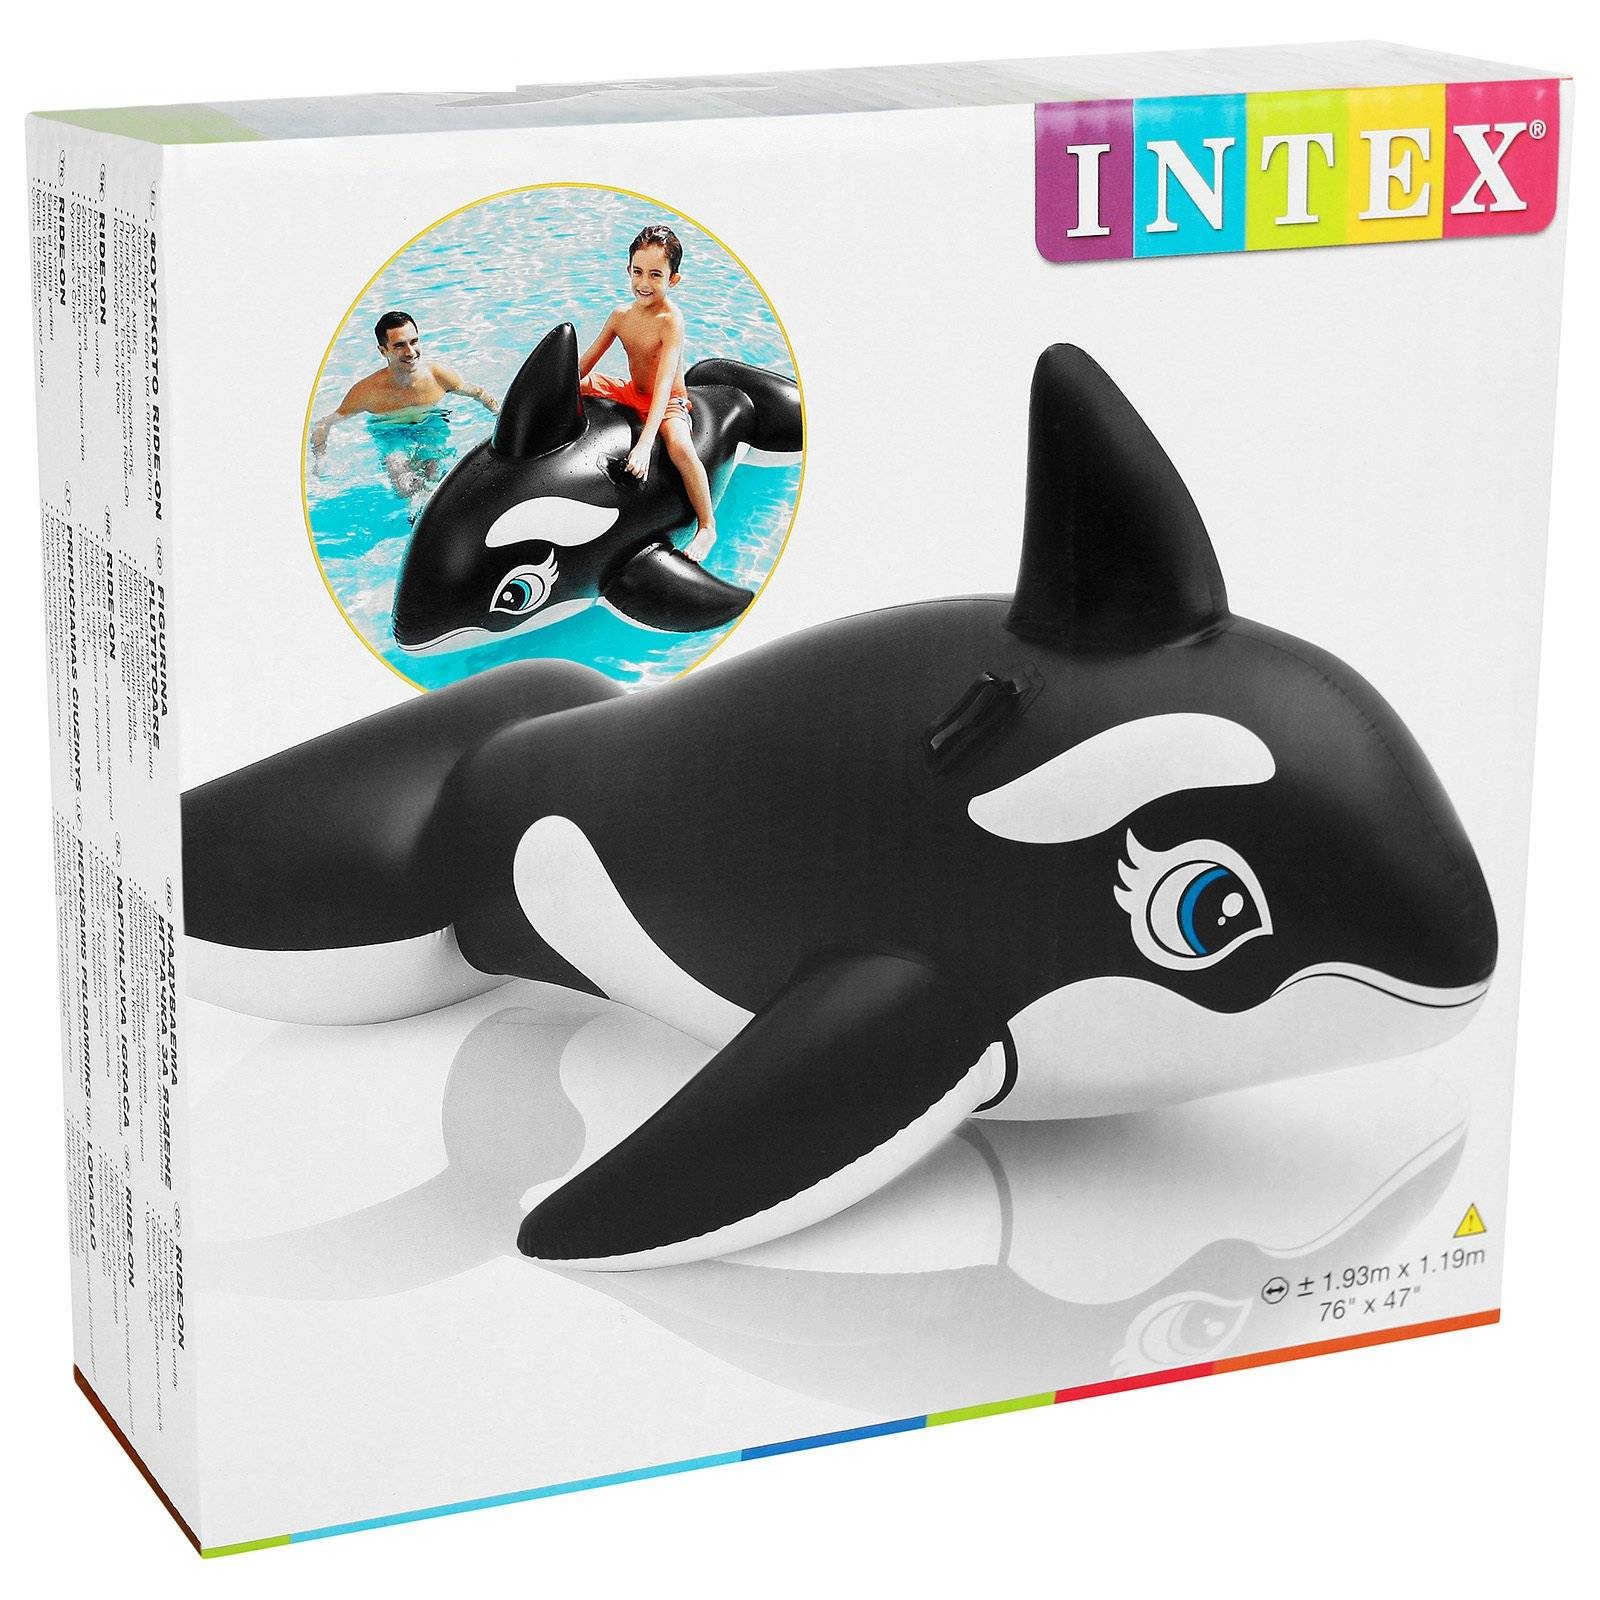 Надувная игрушка для плавания Касатка Intex 58561